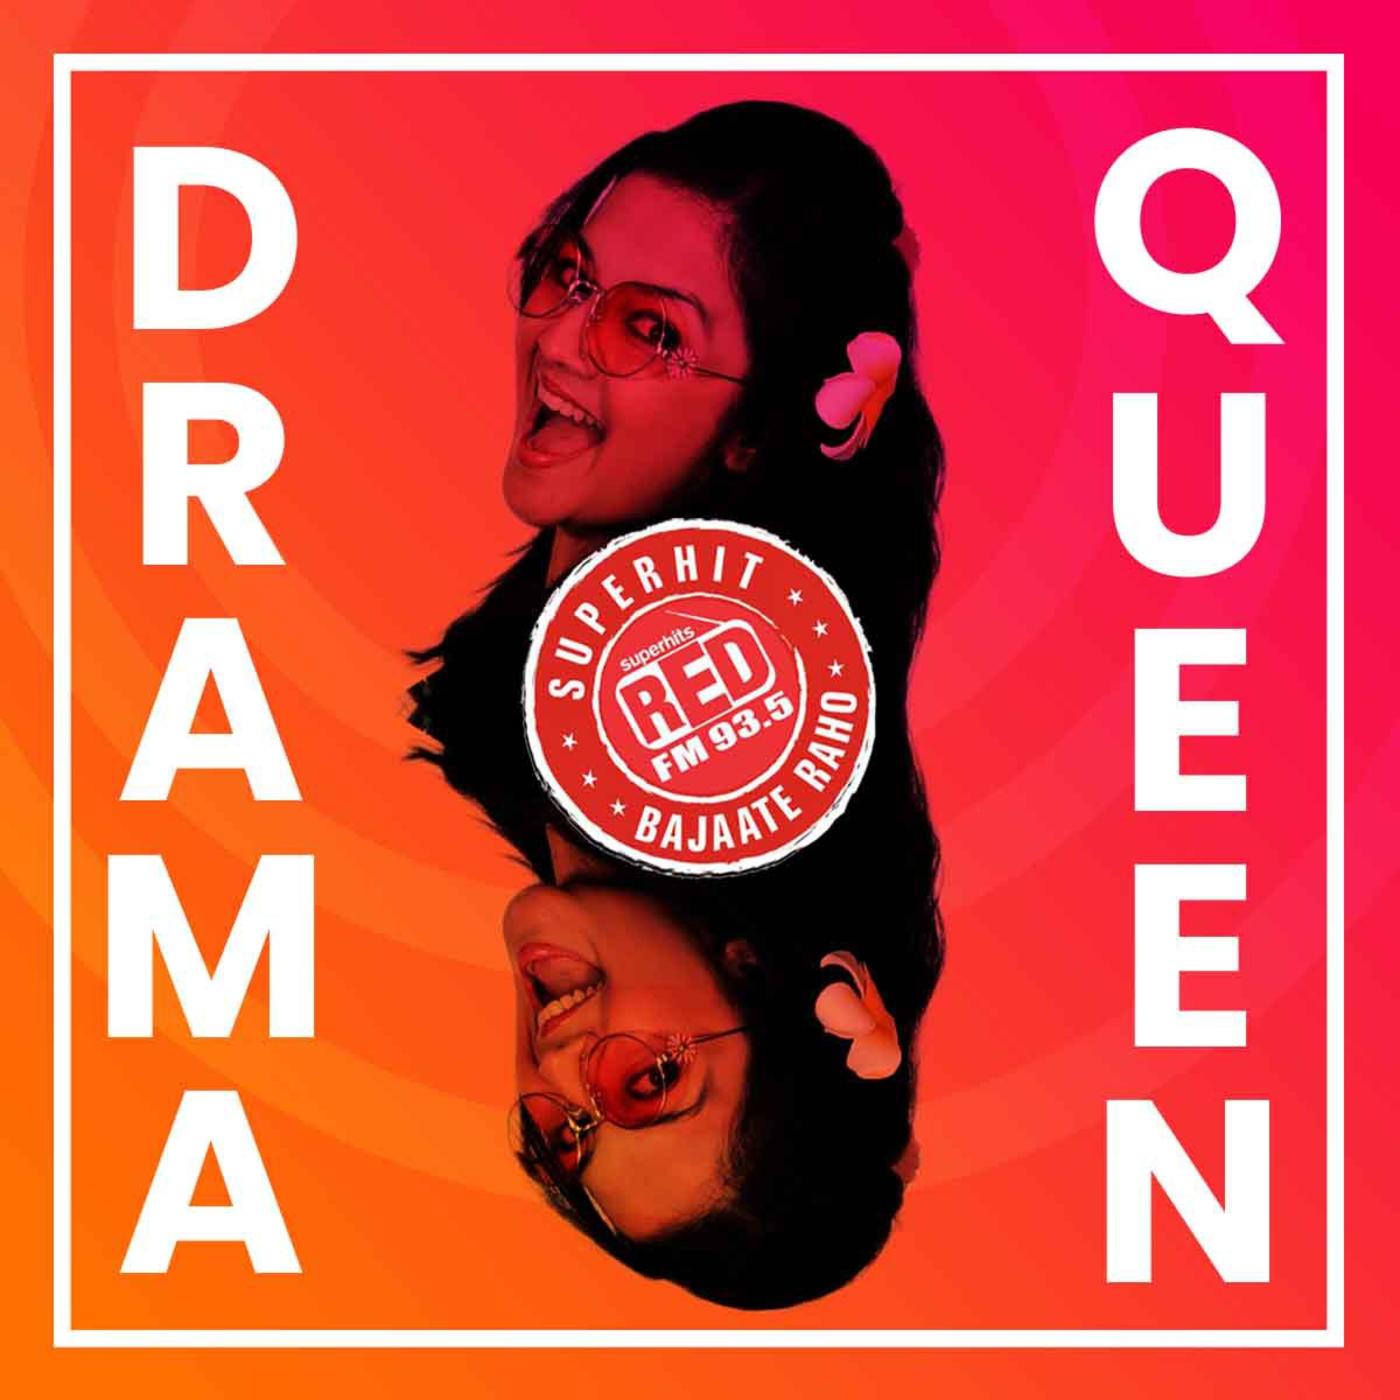 Drama Queen Swati